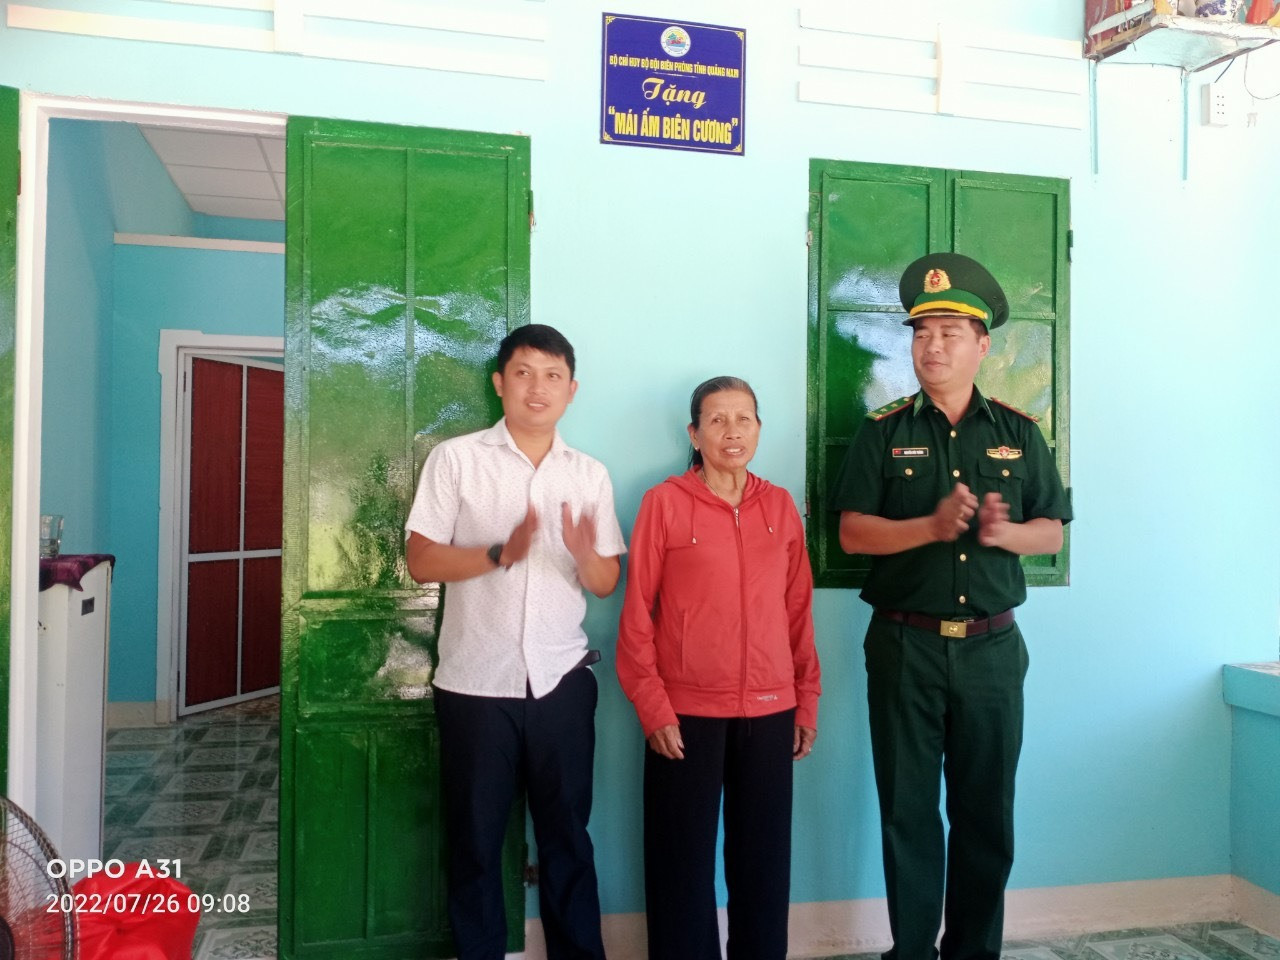 Bà bà Trần Thị Hạng (giữa) vui mừng bên căn nhà mới,